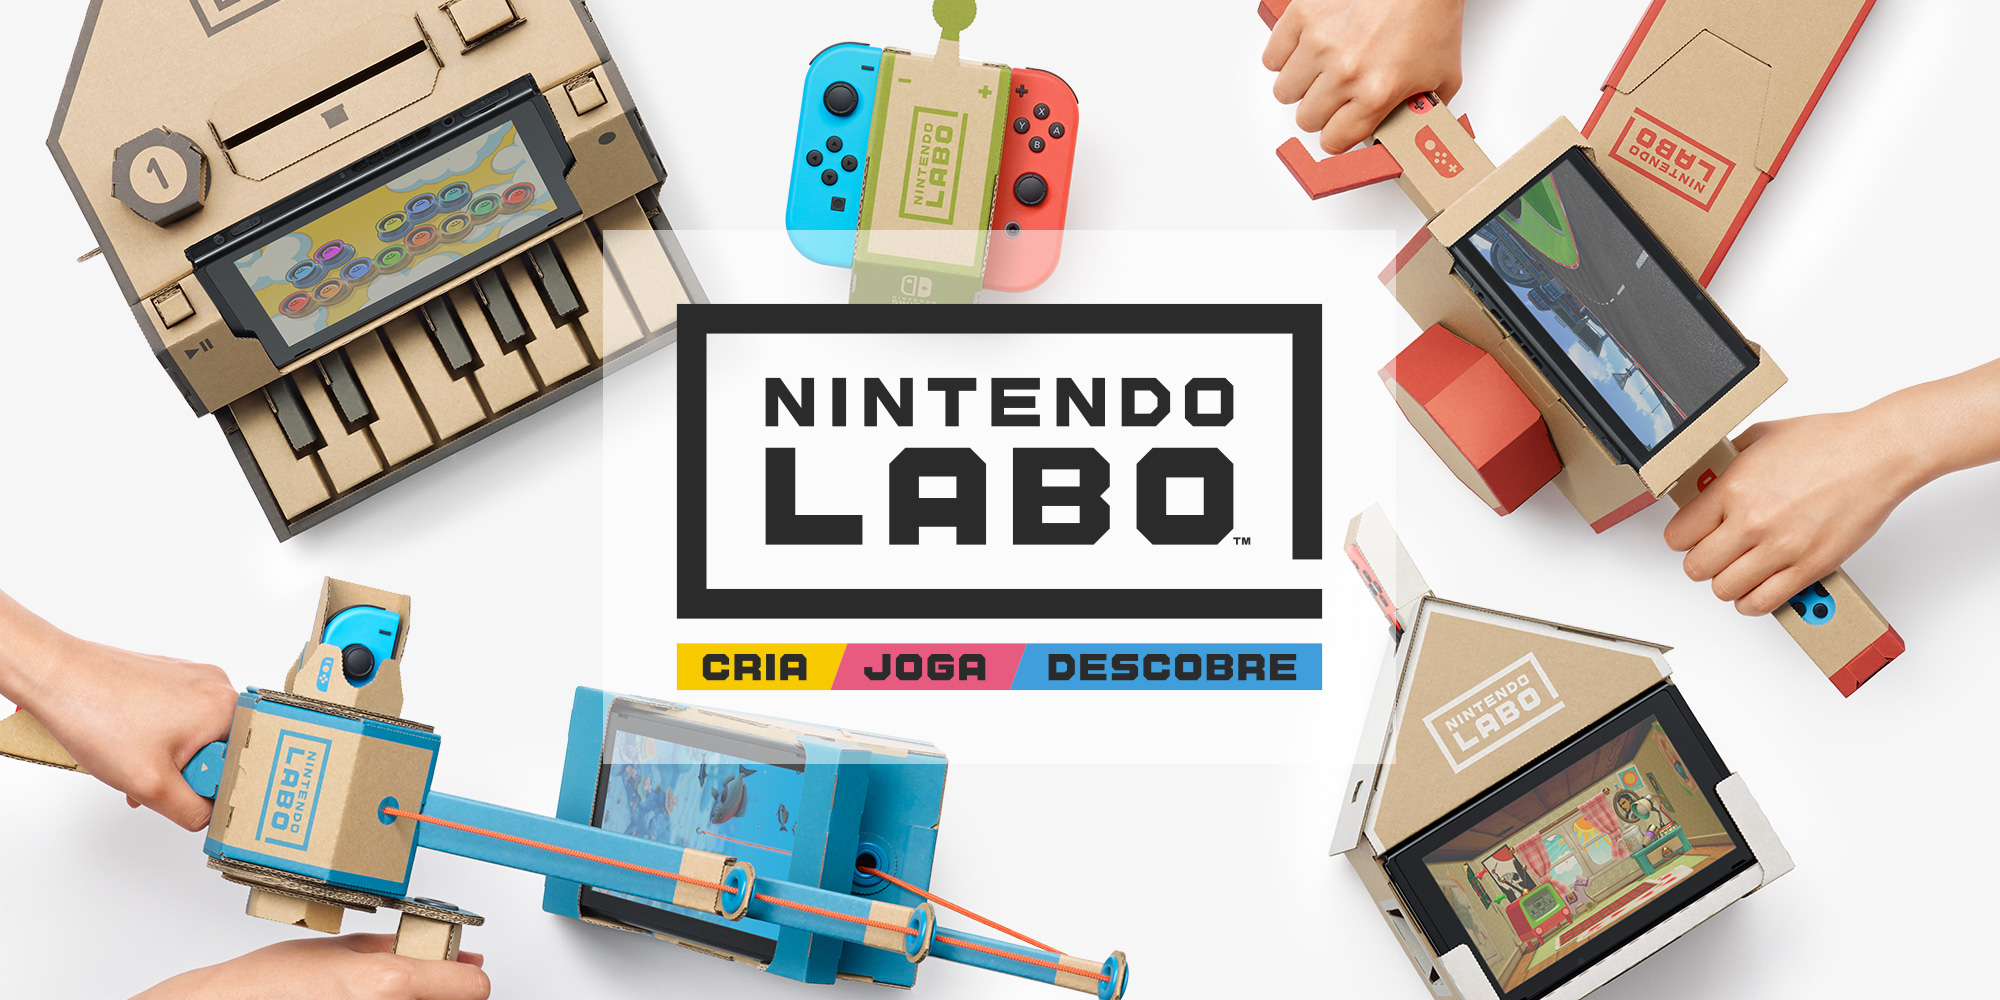 Cria, joga e descobre com o Nintendo Labo!